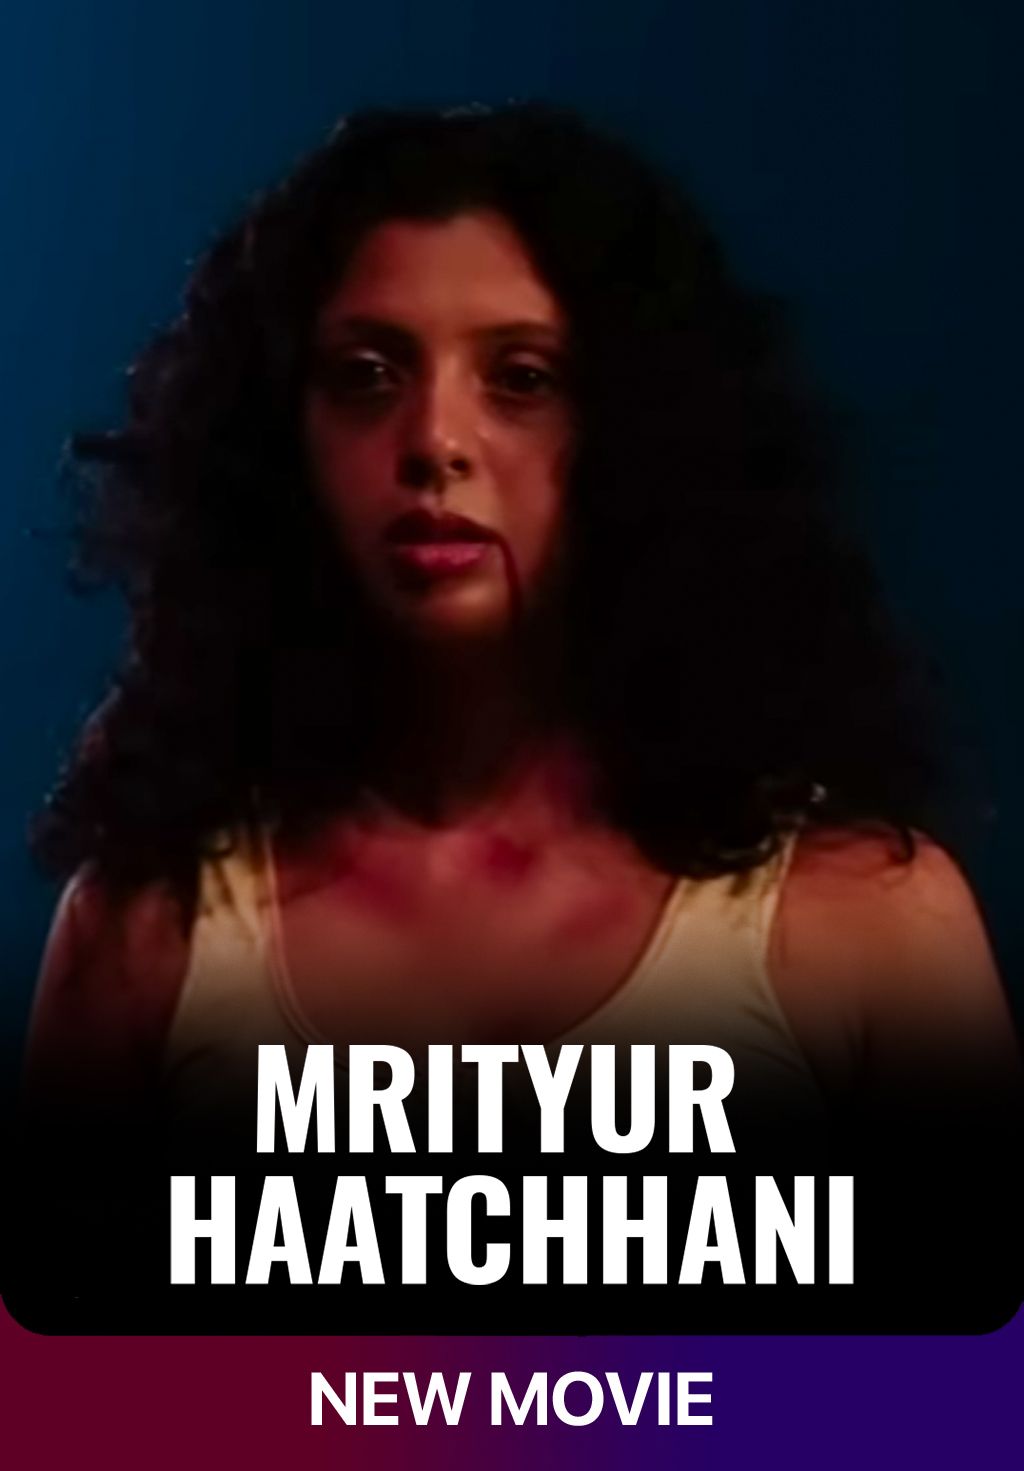 Mrityur Haatchhani